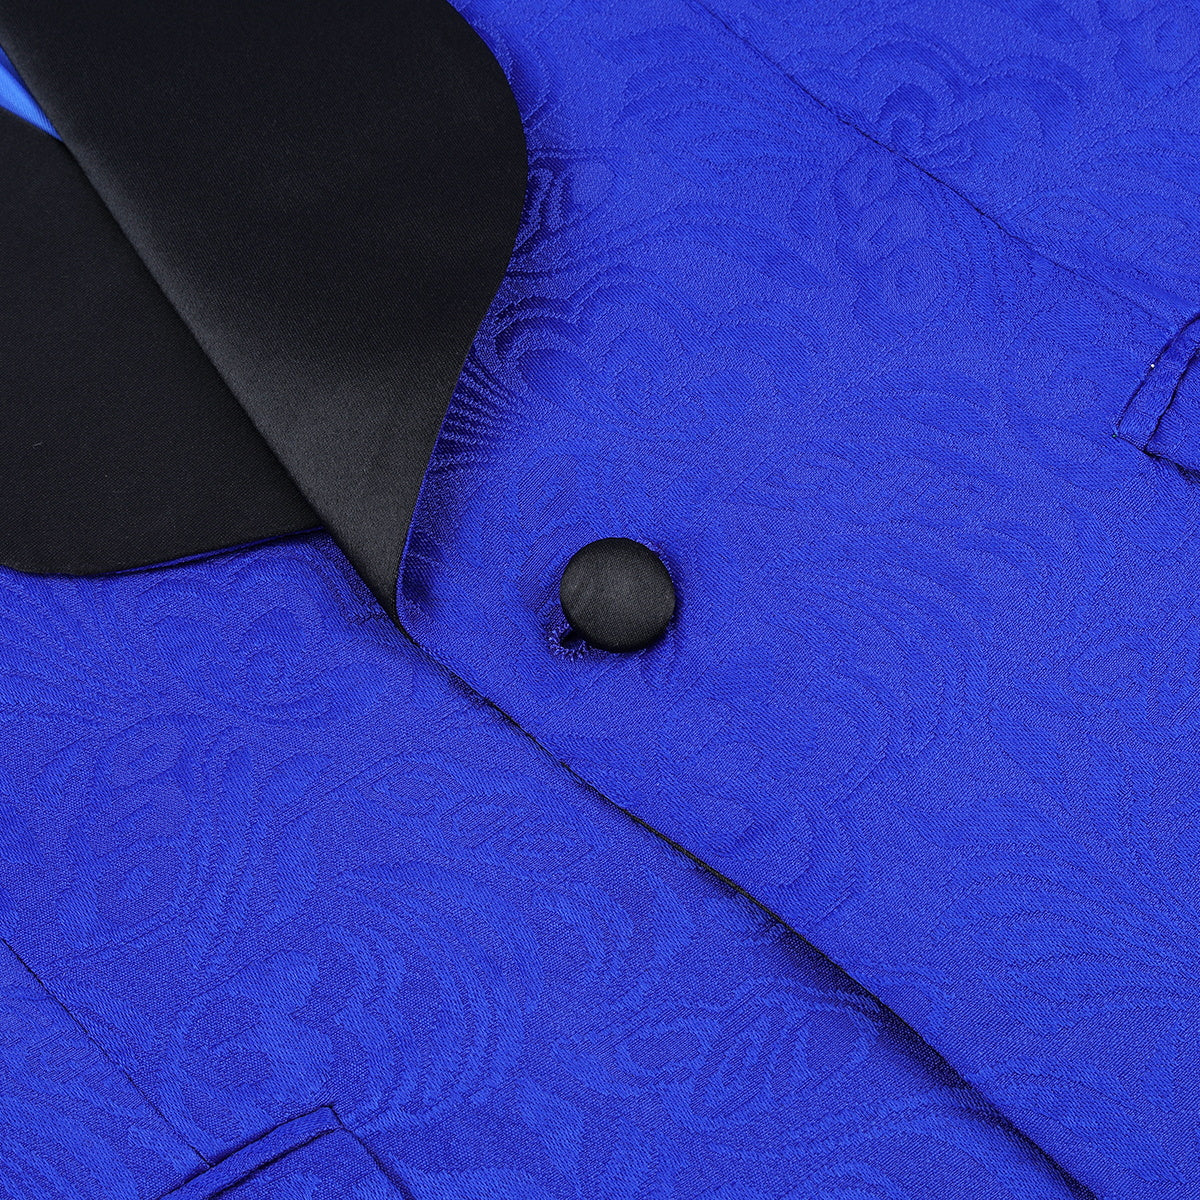 Paisley Suit 2-Piece Slim Fit Print Suit Blue